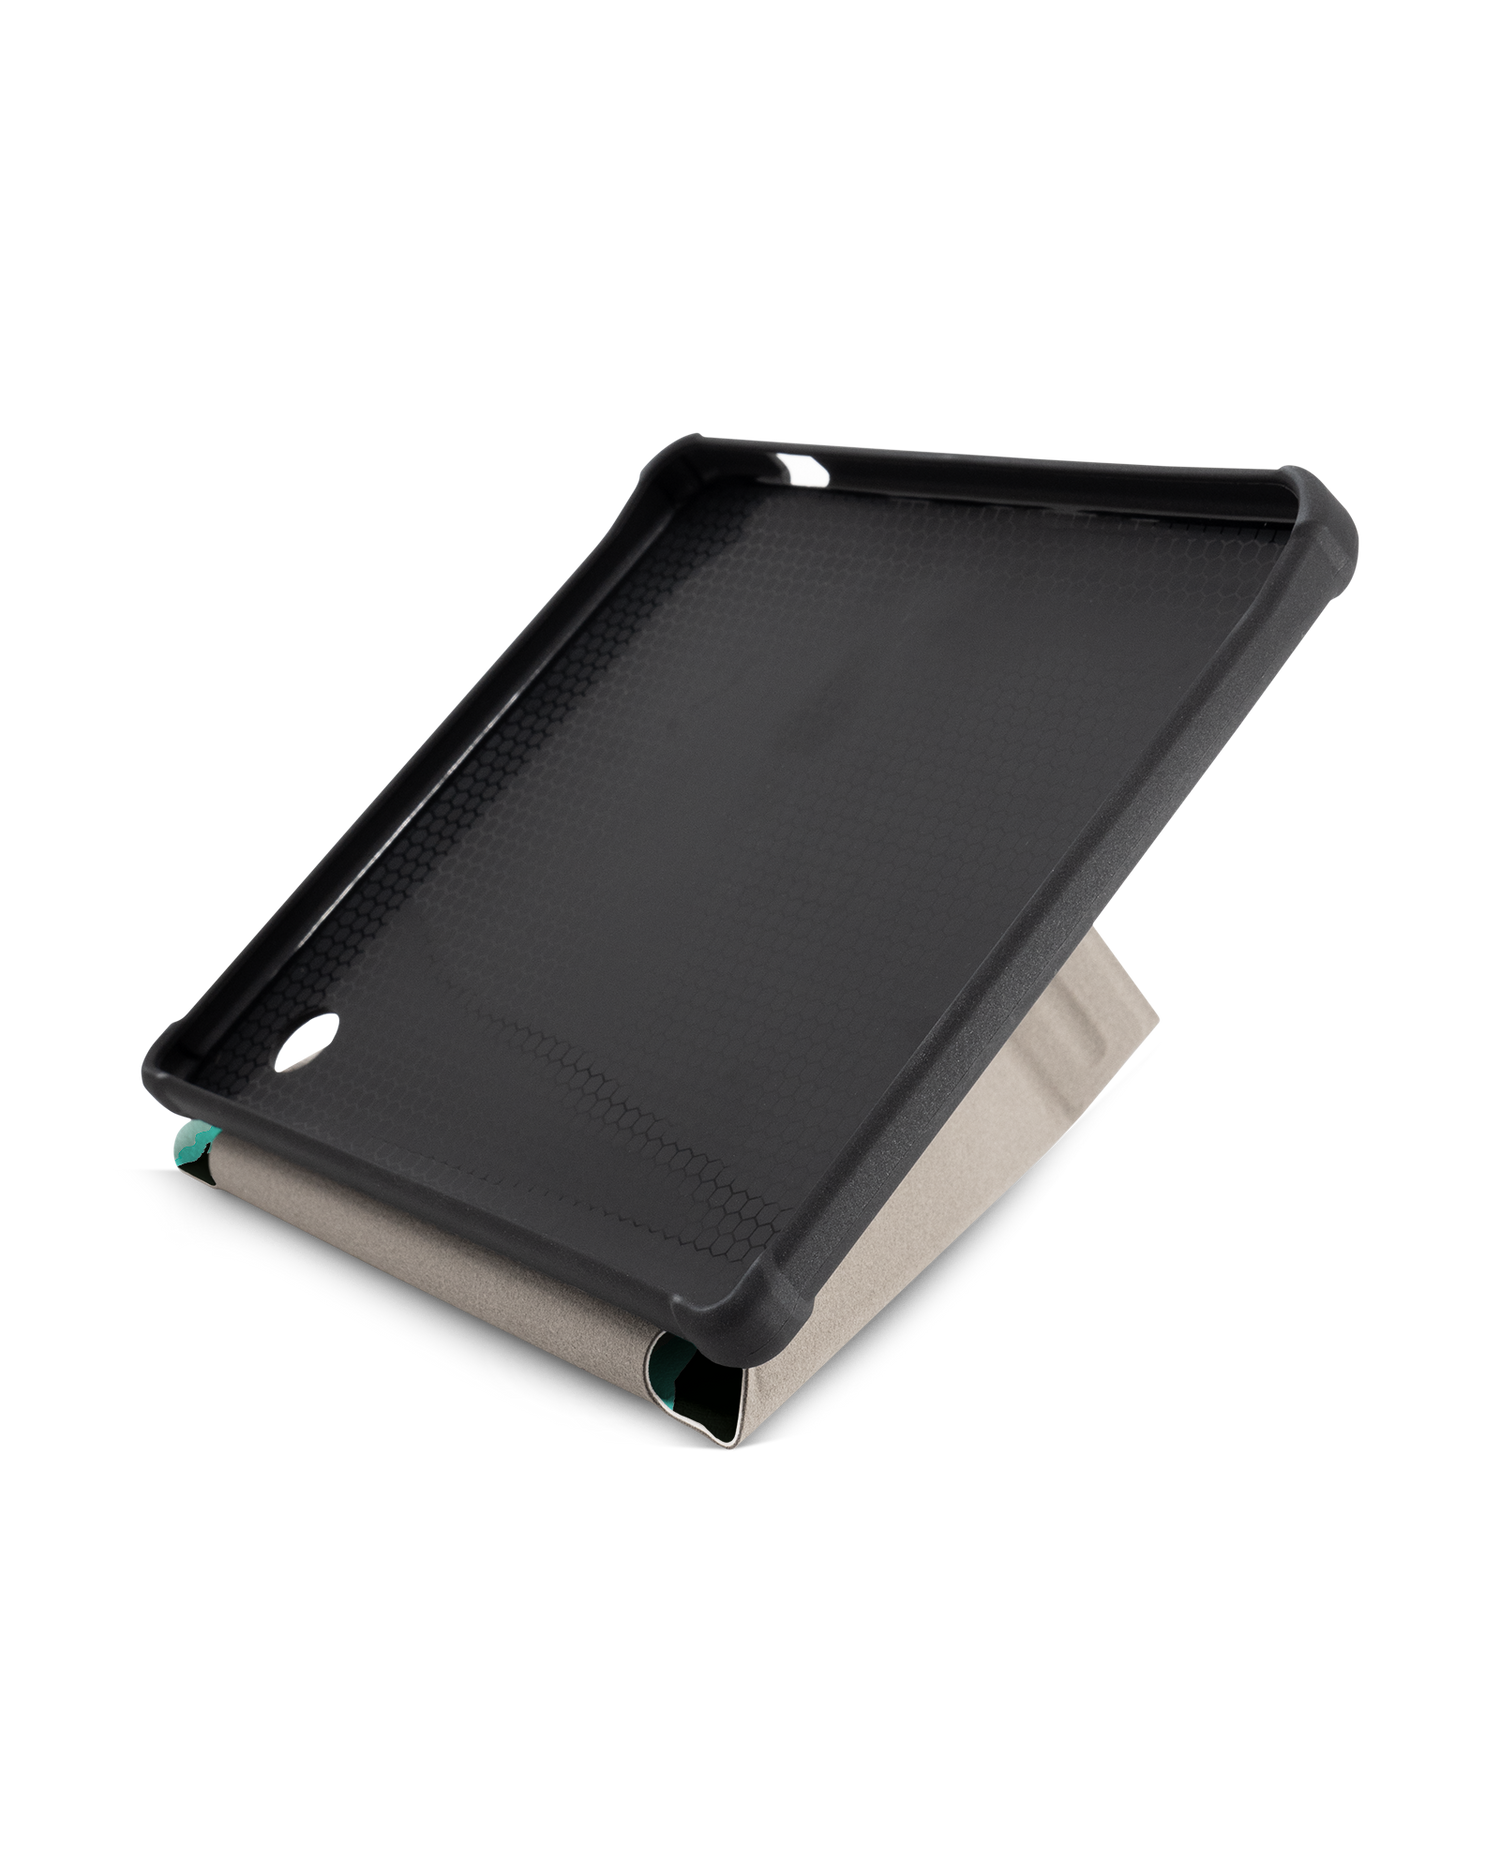 Neon Sharks eBook-Reader Smart Case für tolino vision 5 (2019): Aufgestellt im Querformat Innenansicht